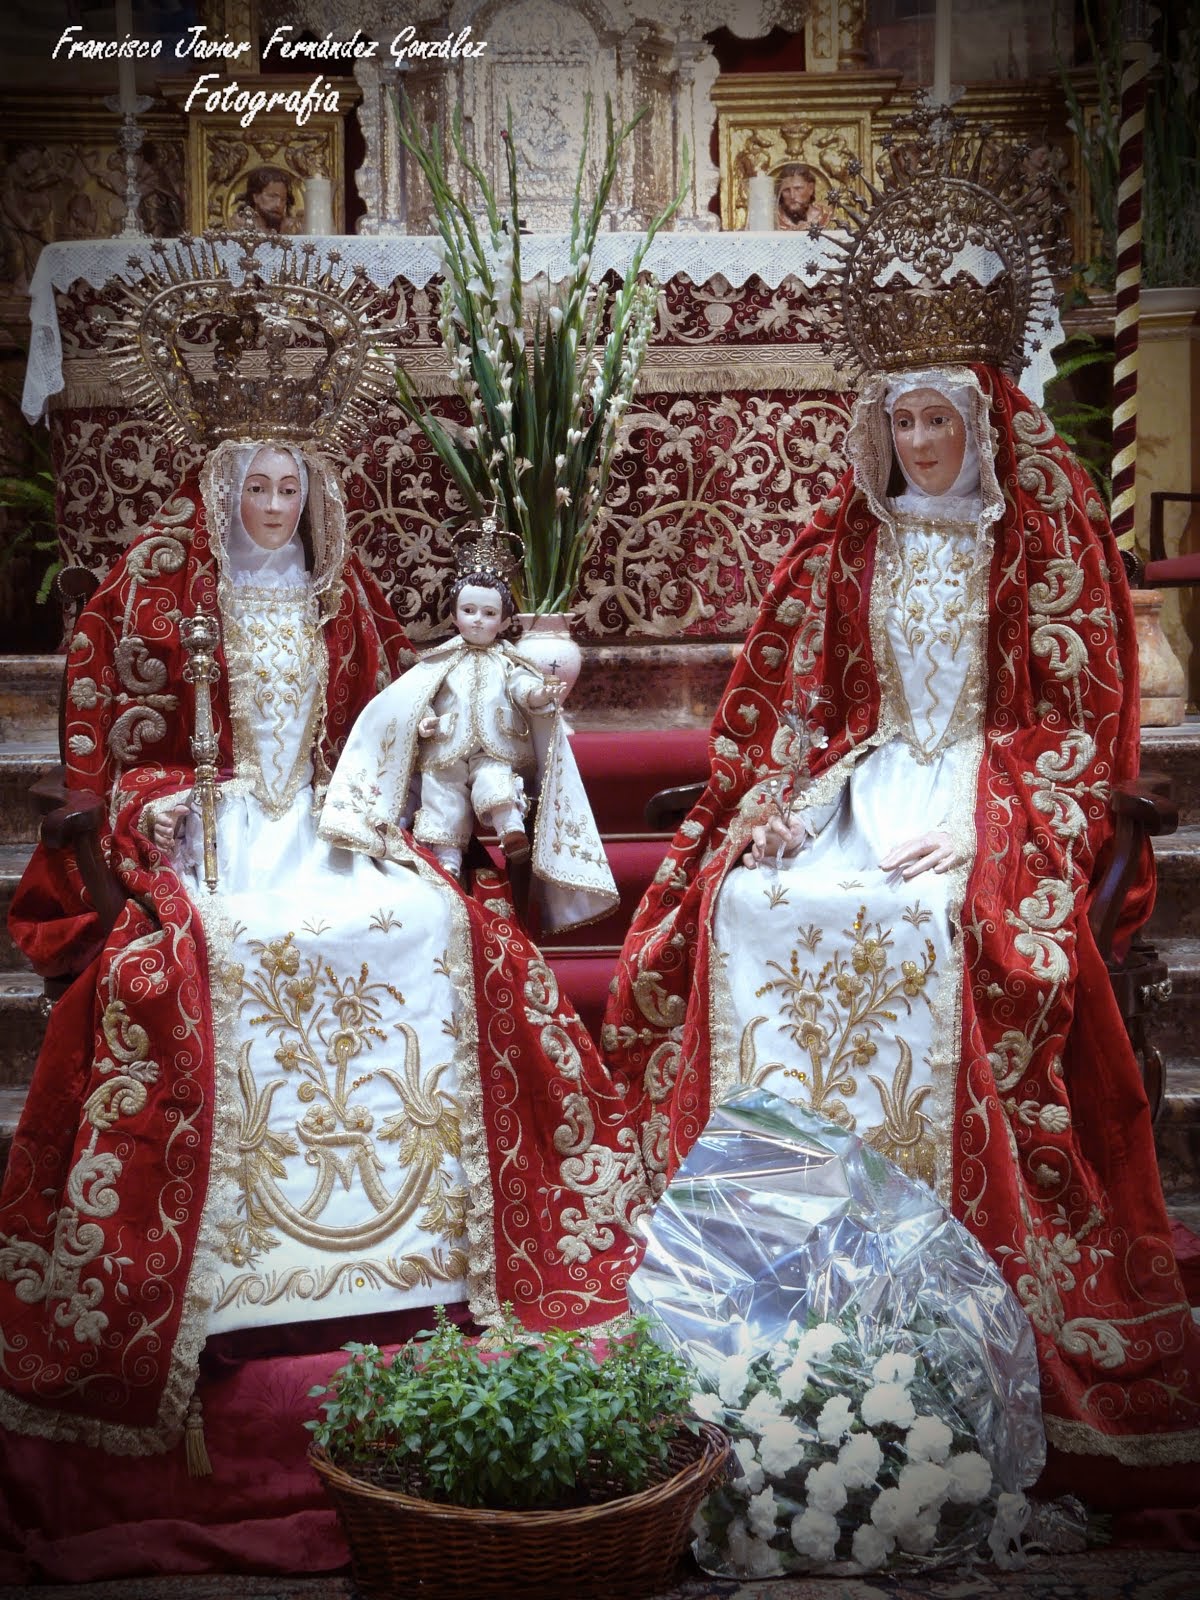 Conjunto escultórico compuesto de Santa Ana, la Virgen María y el niño Jesús. (Parroq. Santa Ana)